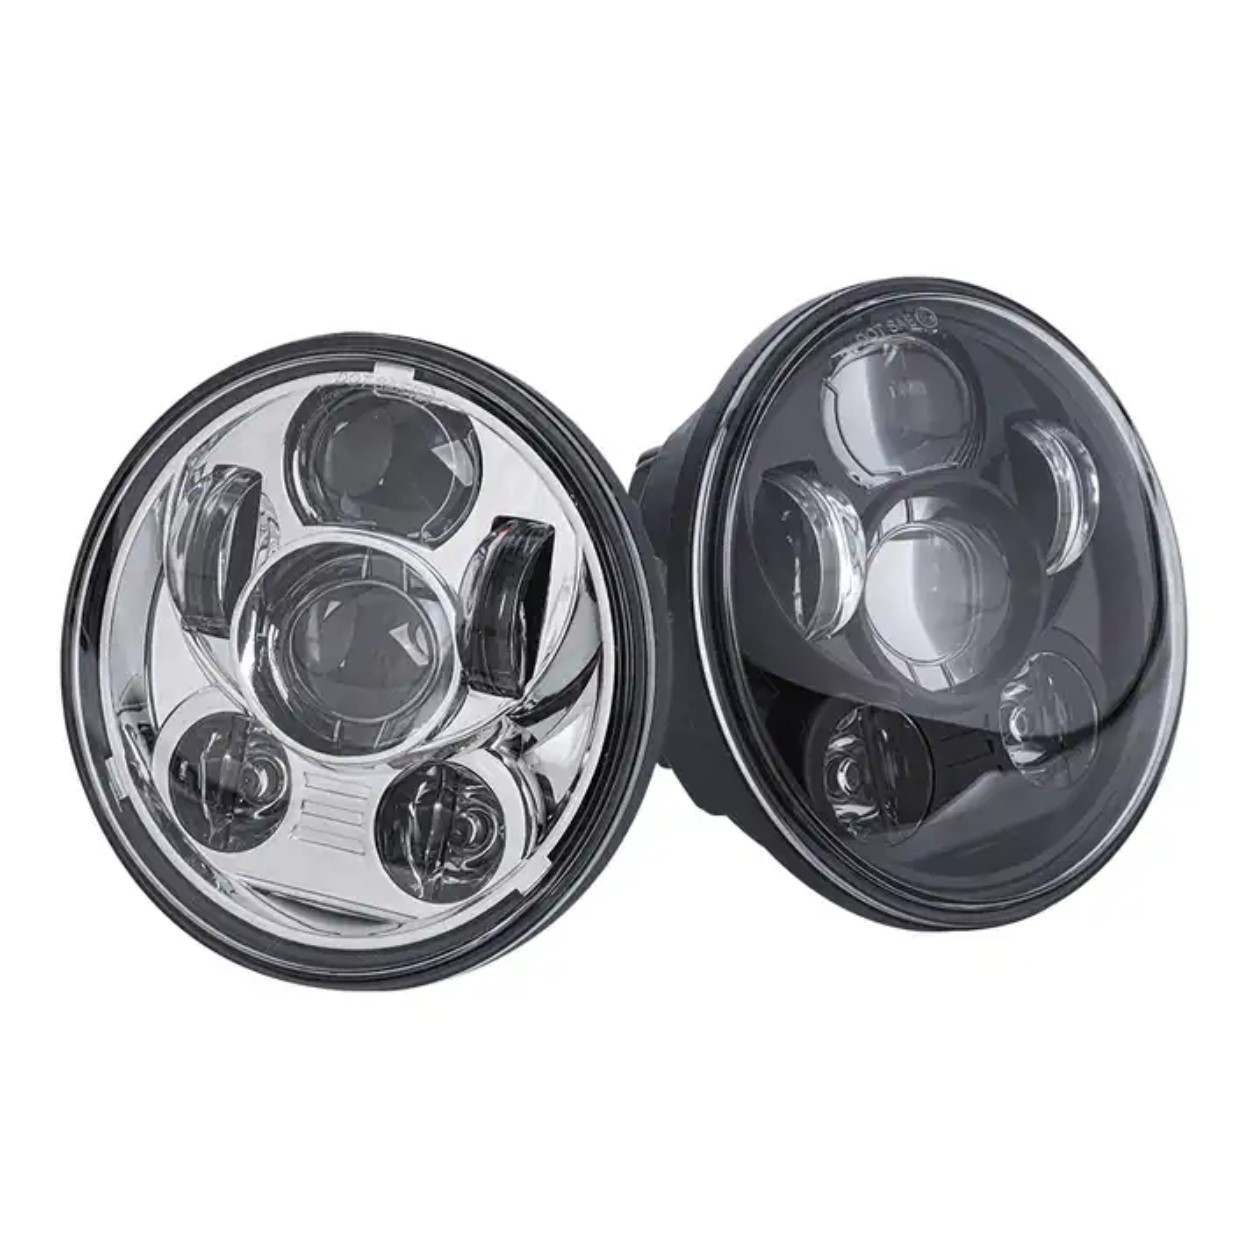 Adapterkabel für LED Scheinwerfer mit 2 Lampen 5,75" Harley Davidson 